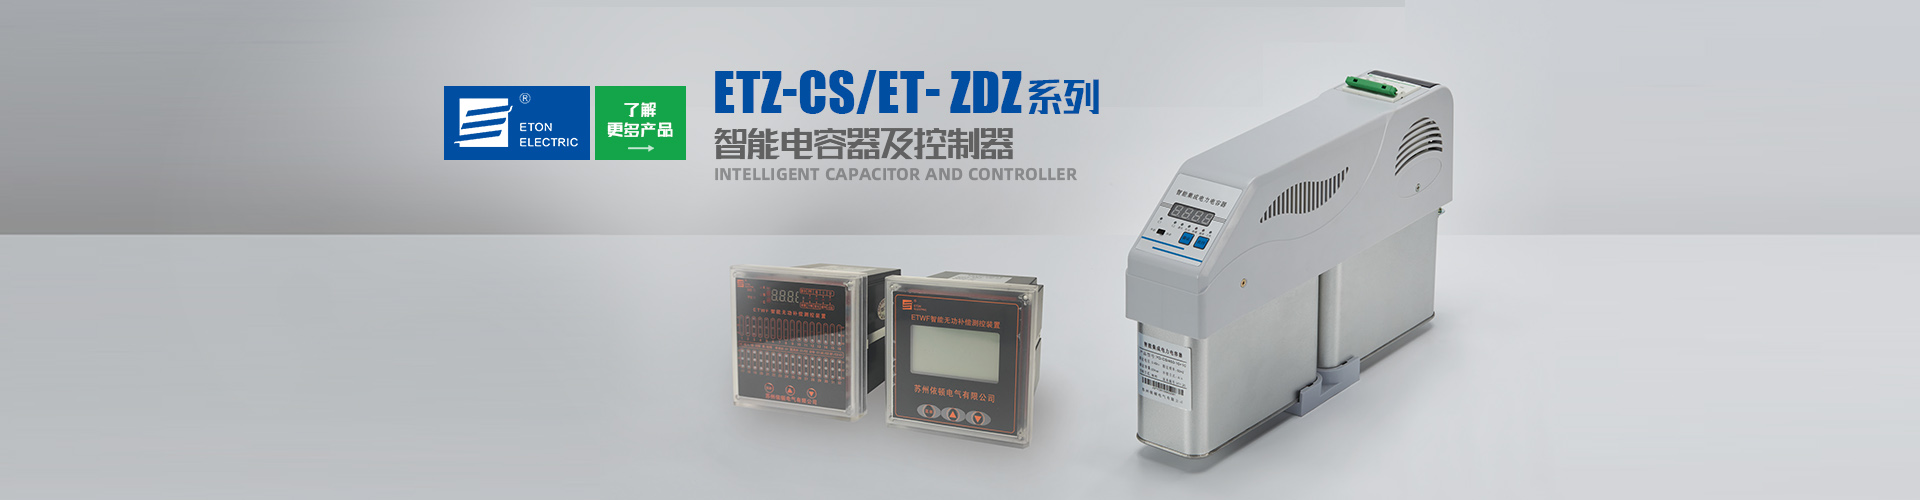 太阳集团tyc151(中国)官方网站_产品396